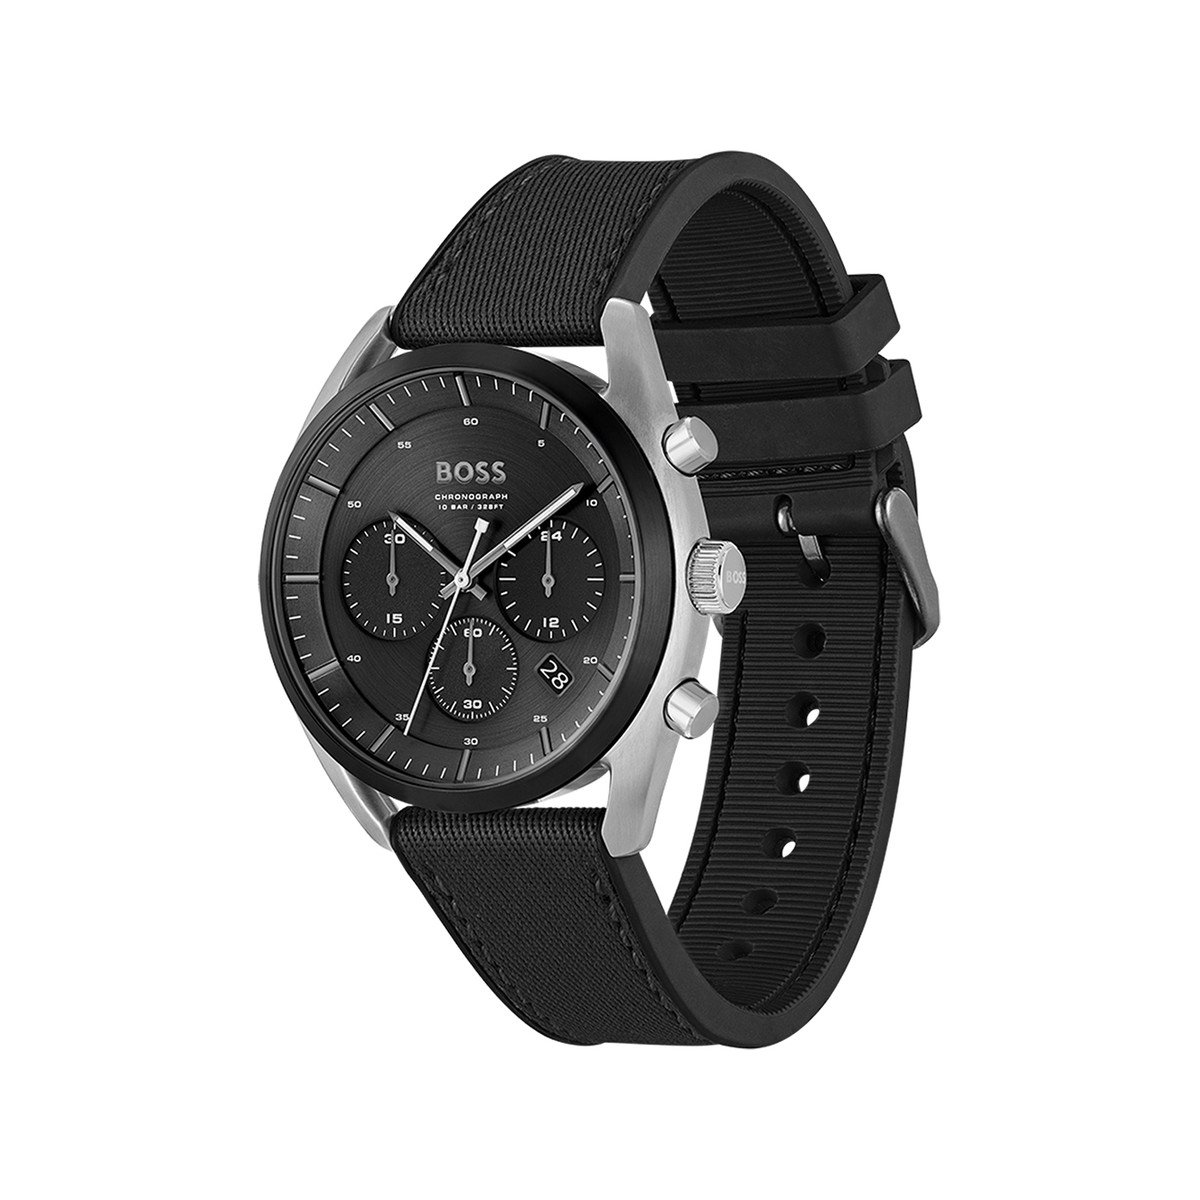 Montre BOSS sport lux homme chronographe, bracelet silicone noir - vue 2